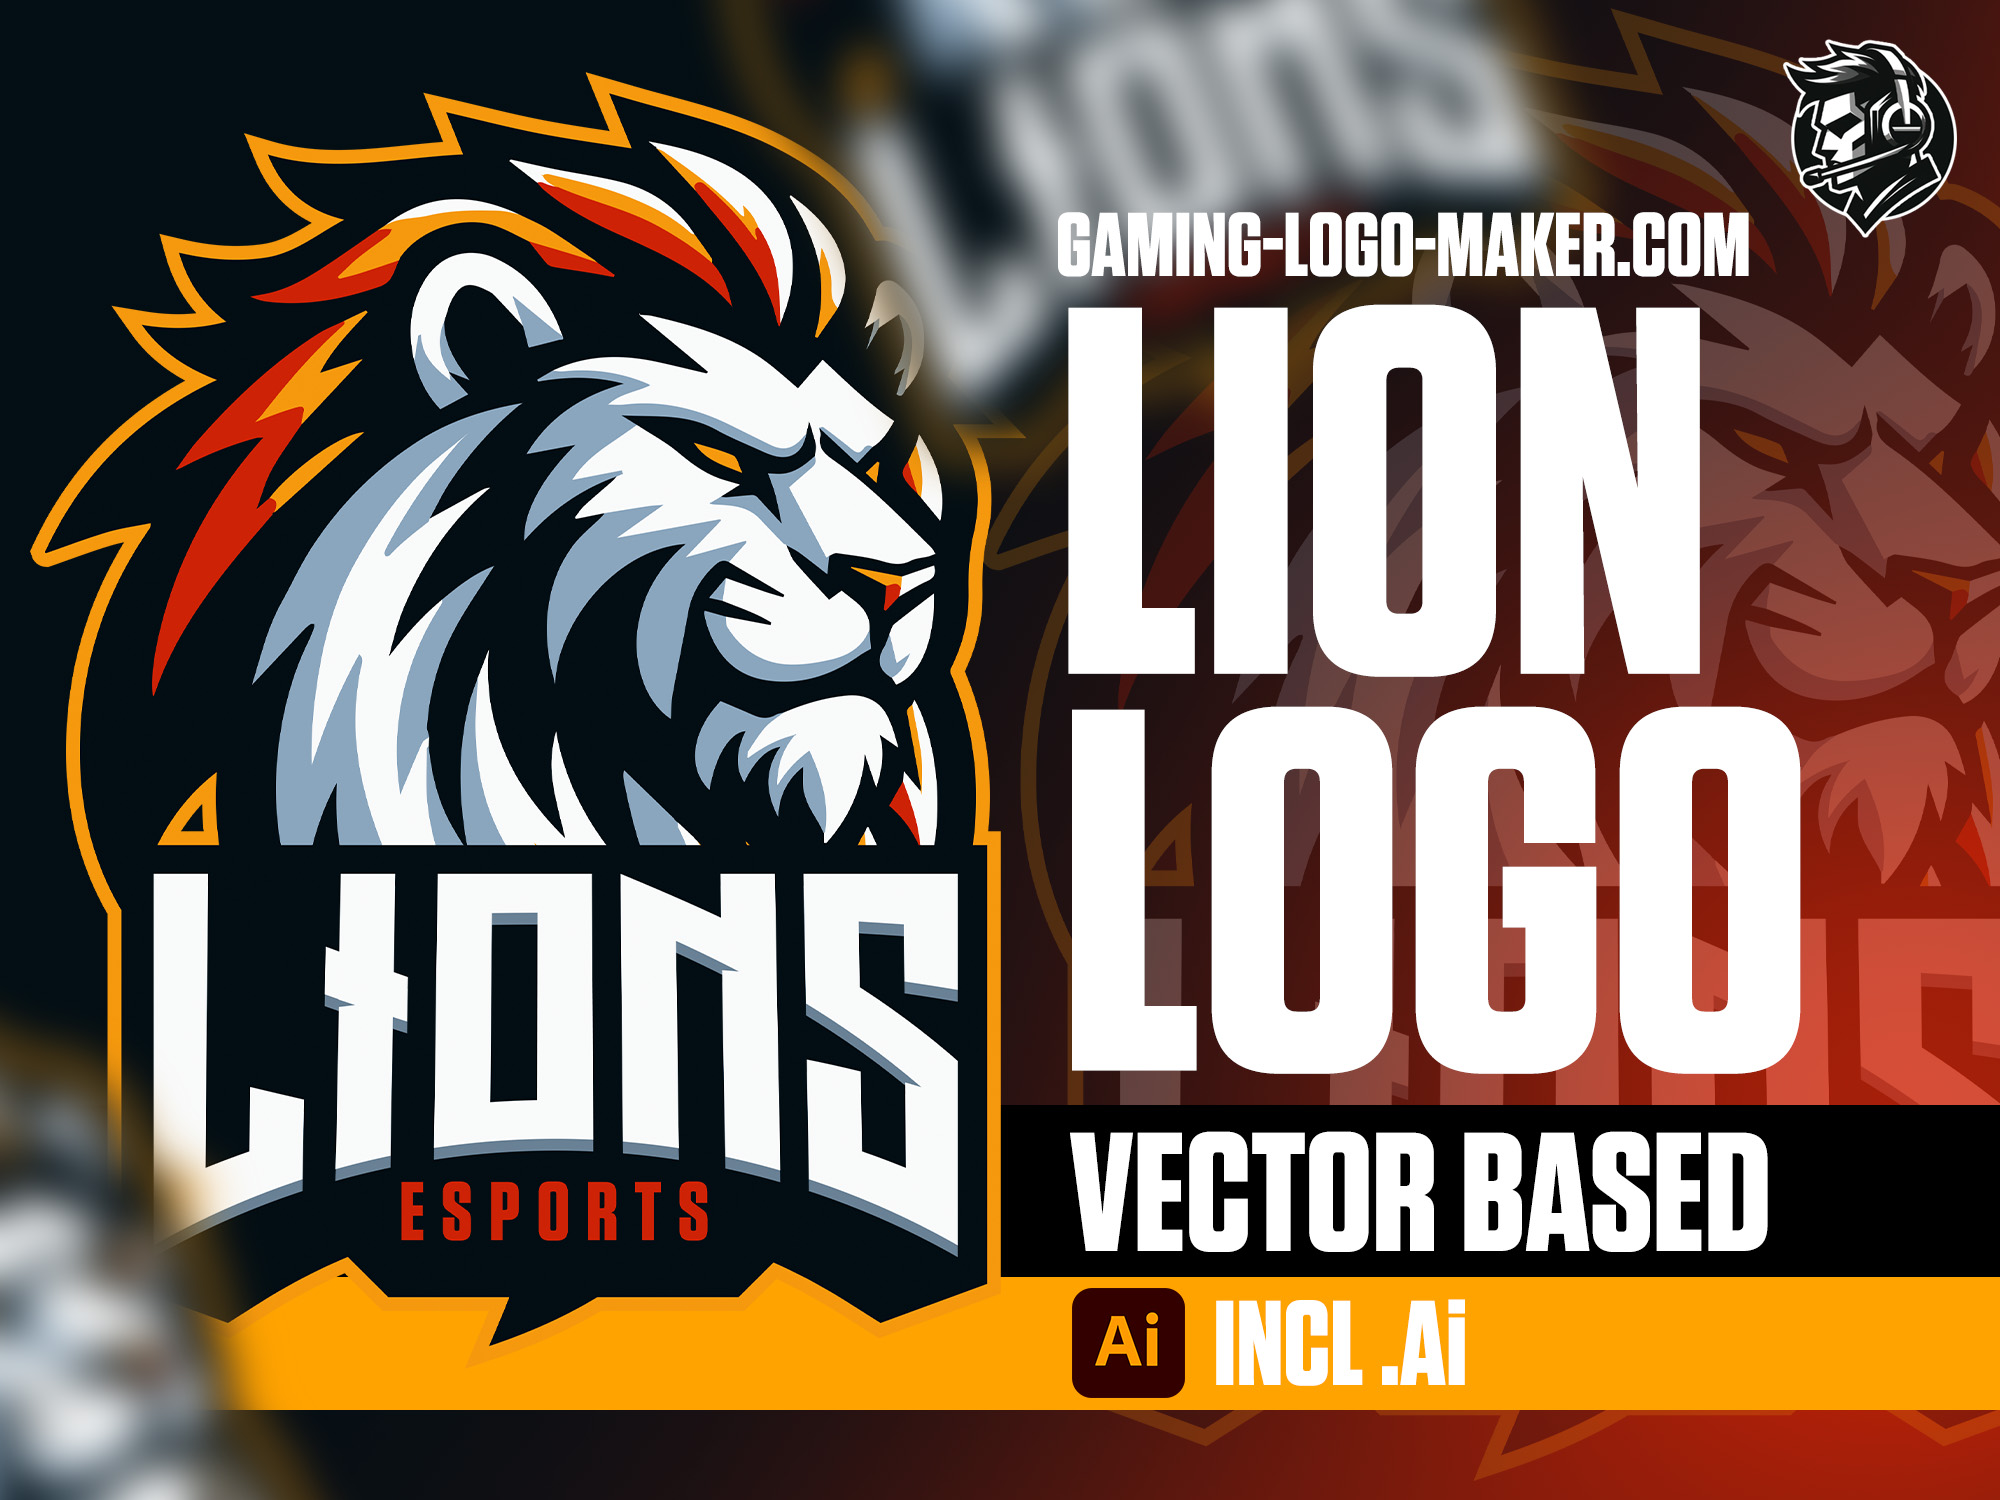 Lion gaming logo esports logo mascot product thumbnail